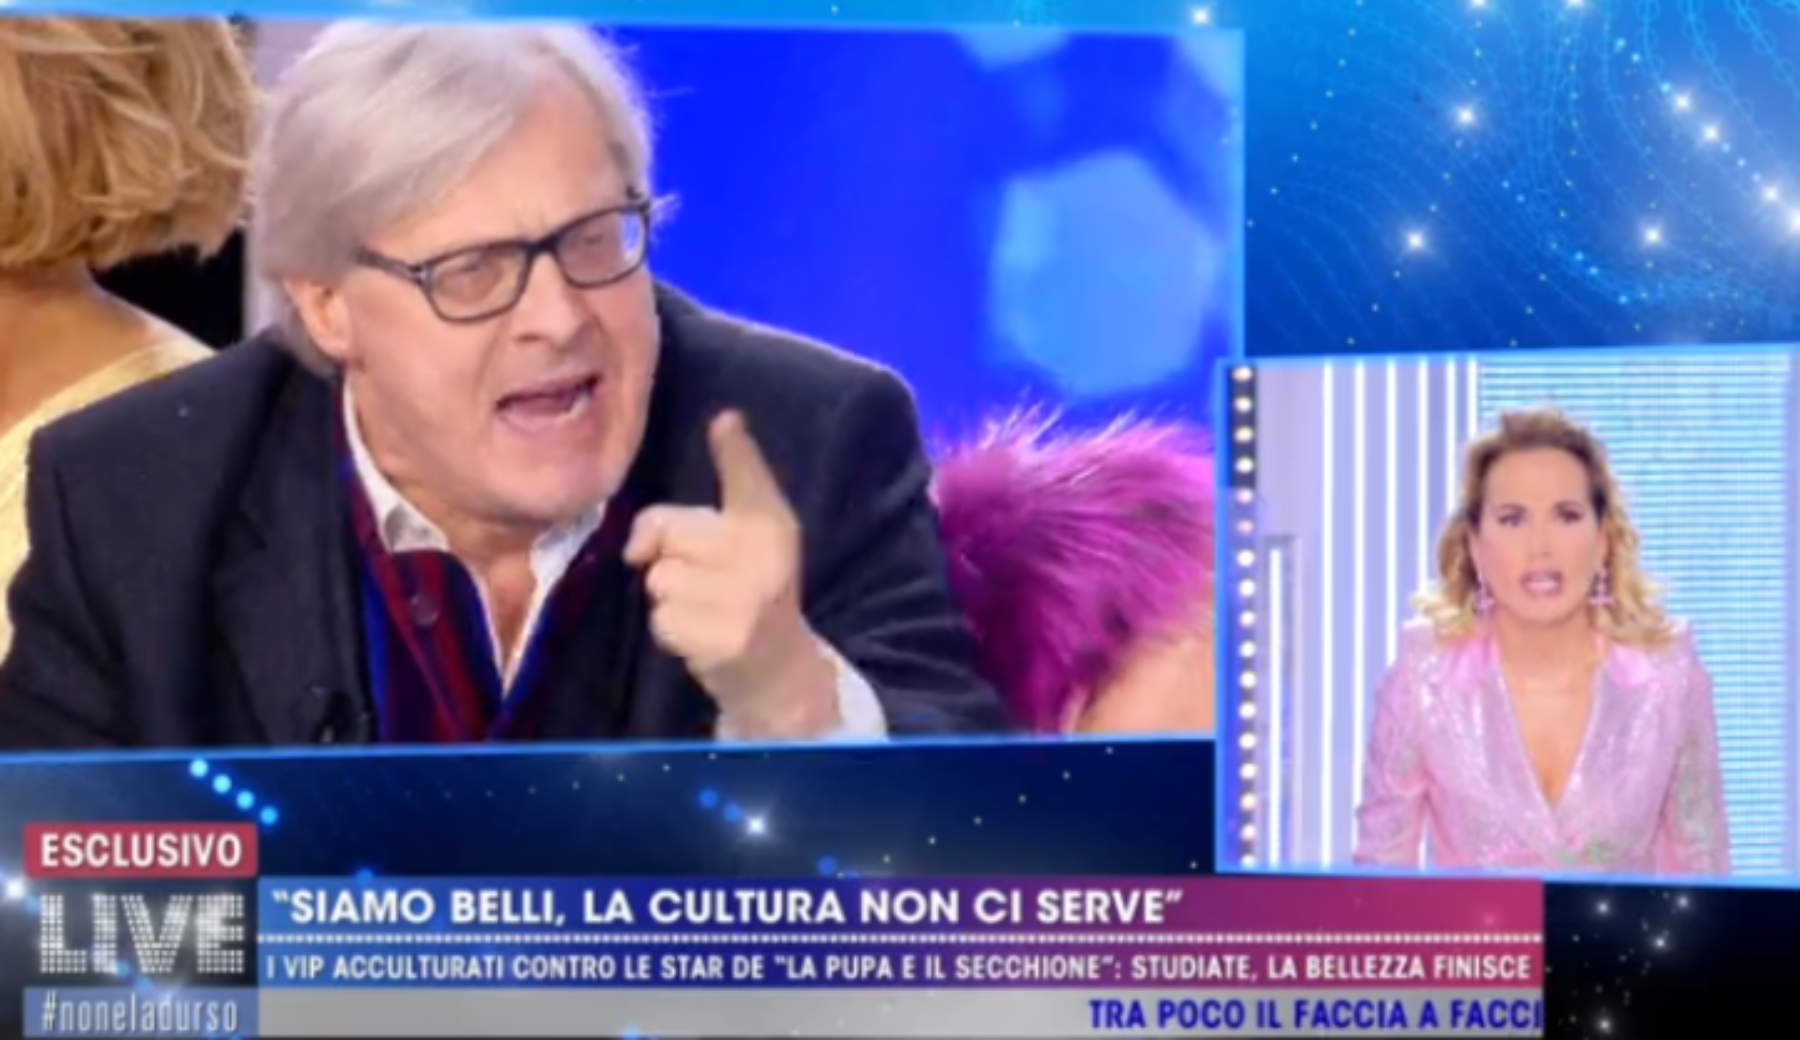 Vittorio Sgarbi contro Barbara D’Urso: la lite prosegue sui social e Mediaset blocca le ospitate del critico